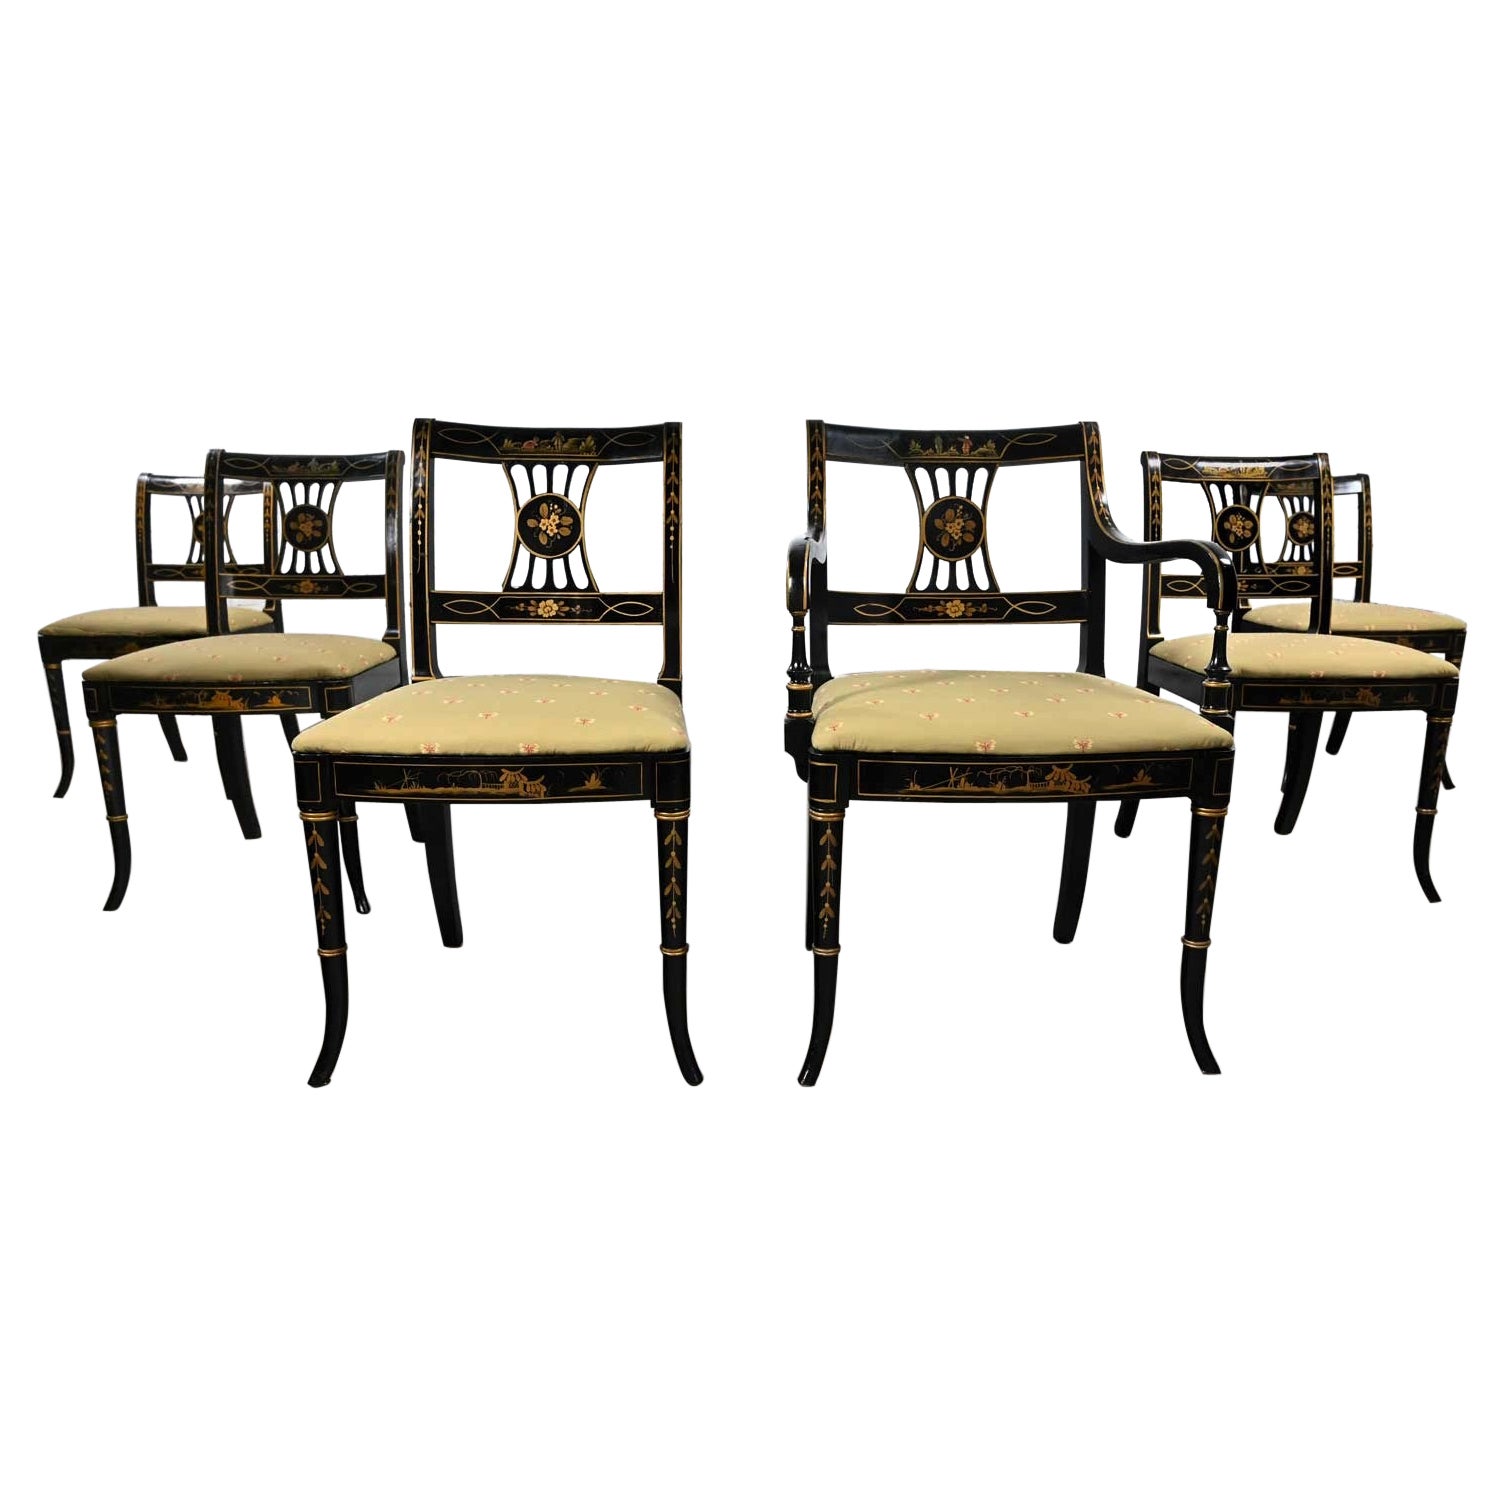 Ensemble de 6 chaises de salle à manger de style Chinoiserie Regency de l'Union National, noires et dorées